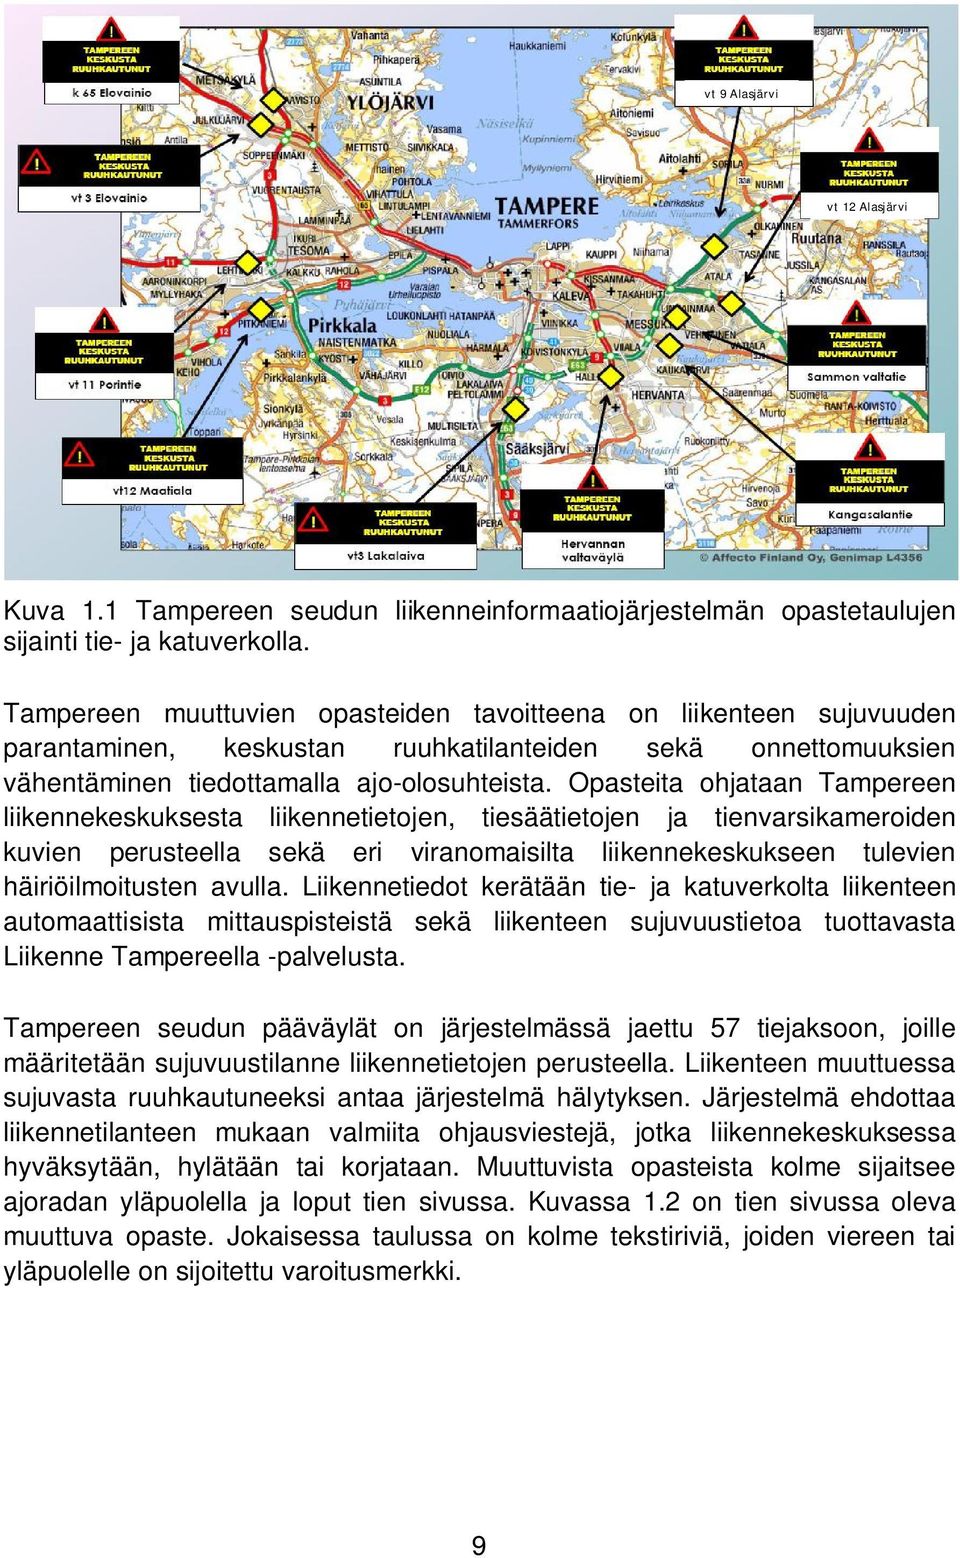 Opasteita ohjataan Tampereen liikennekeskuksesta liikennetietojen, tiesäätietojen ja tienvarsikameroiden kuvien perusteella sekä eri viranomaisilta liikennekeskukseen tulevien häiriöilmoitusten